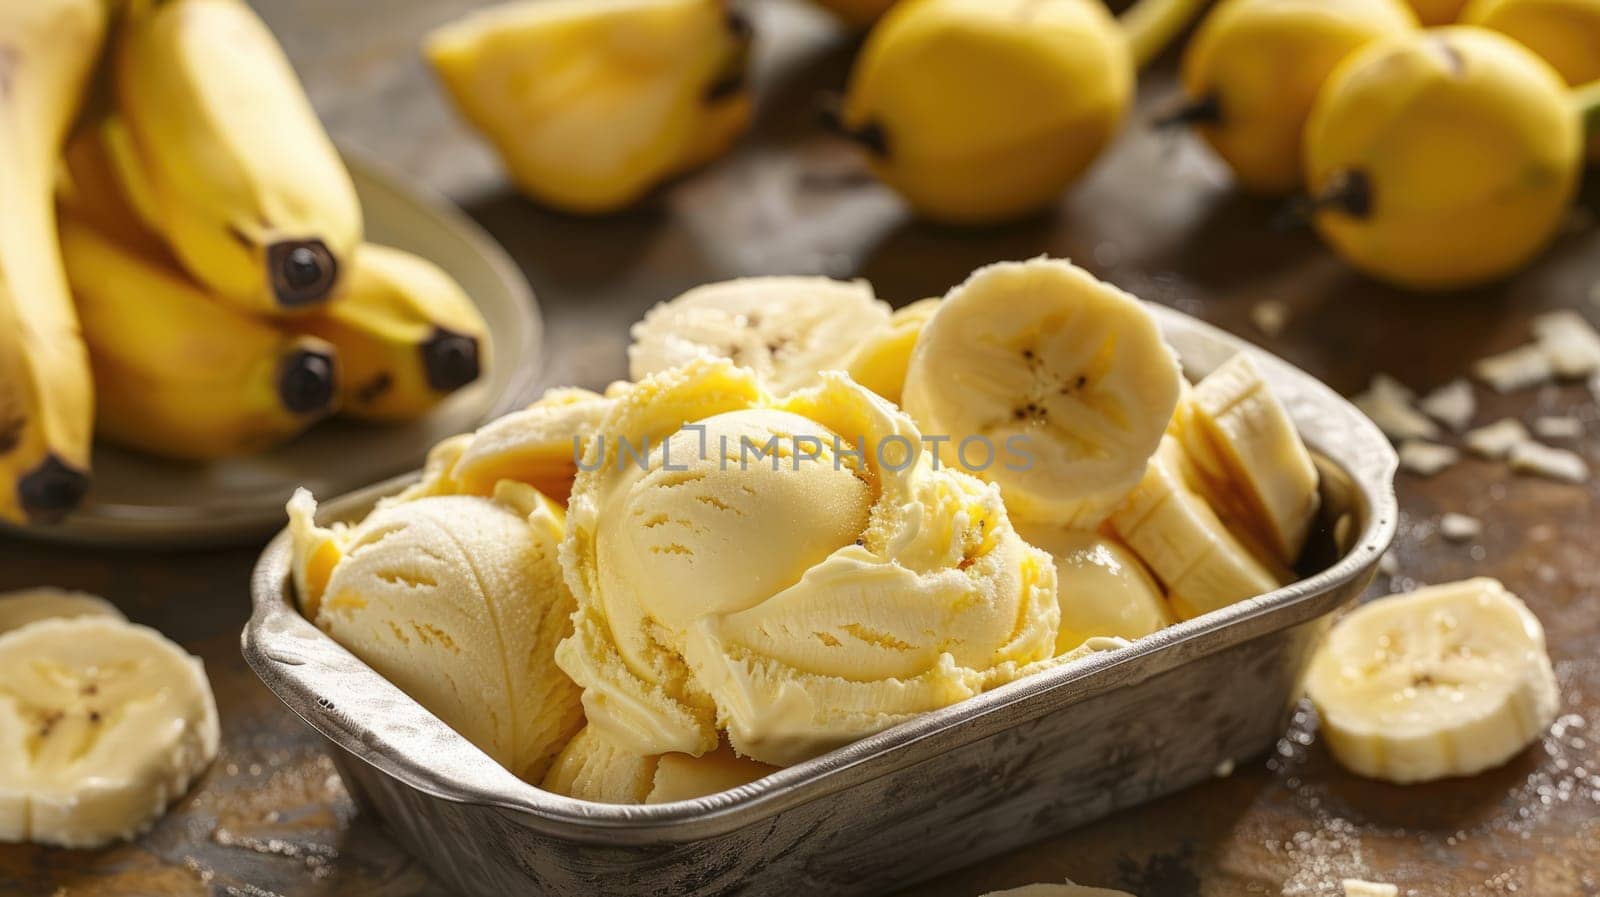 Healthy vegan banana ice cream ready to eat by natali_brill